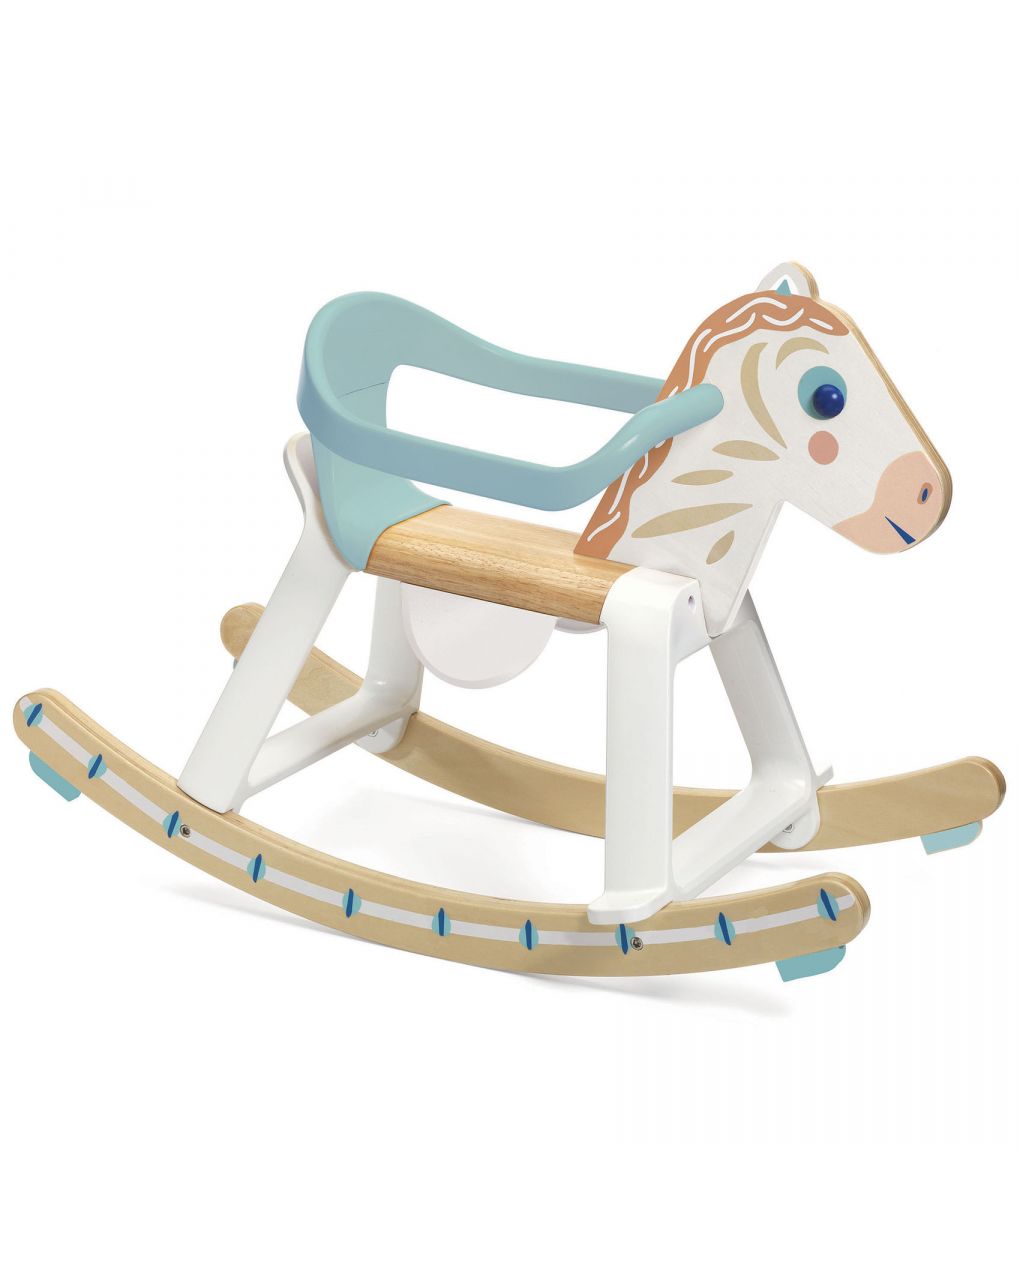 Cavalo de baloiço babyhorses em madeira e plástico - djeco - Djeco